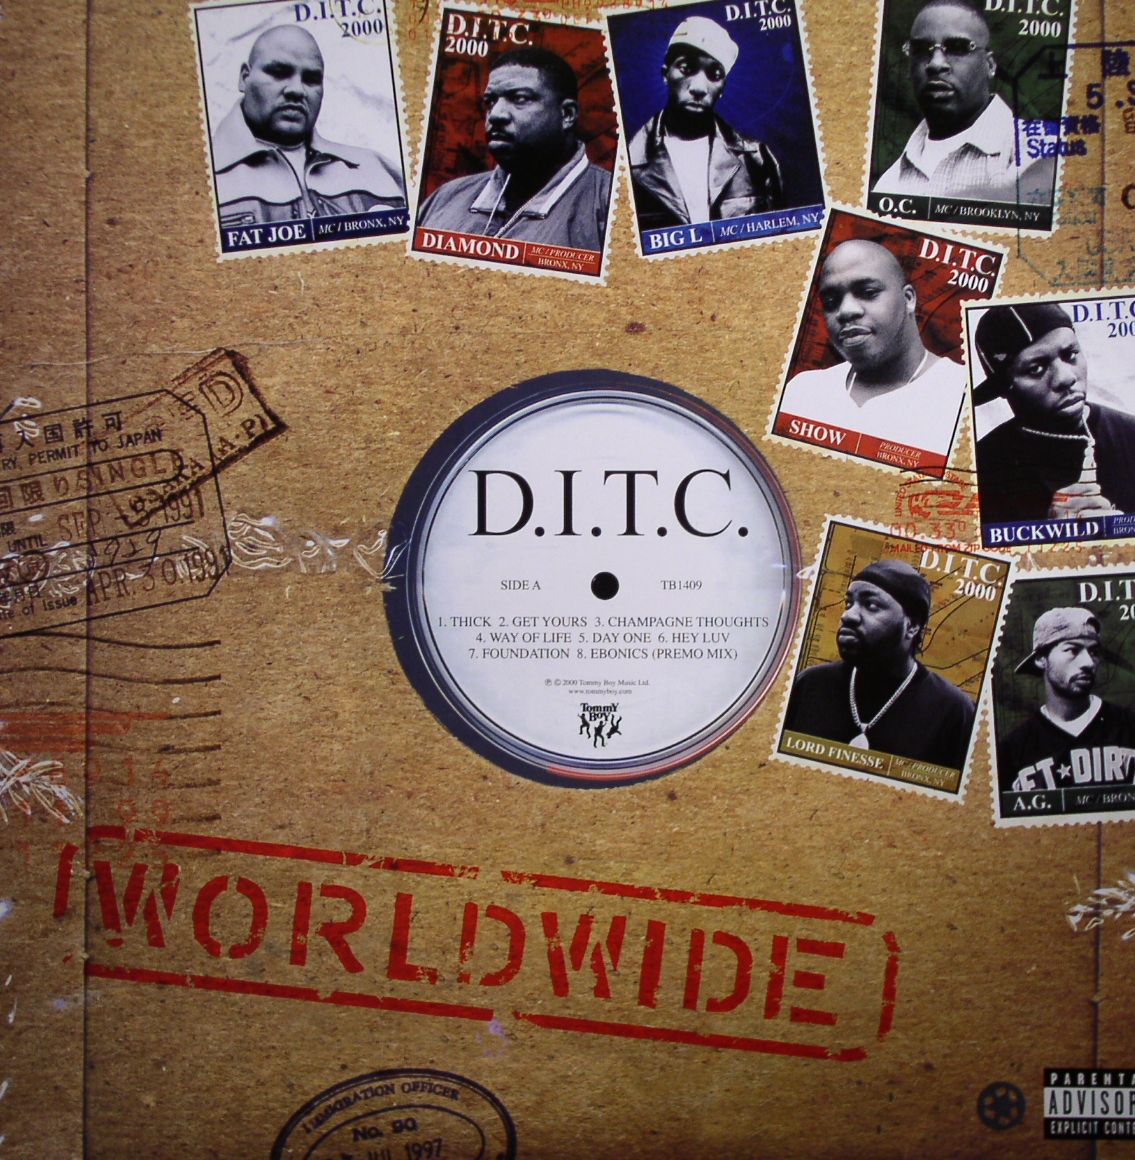 DITC-remix-album-2014-announced.jpg